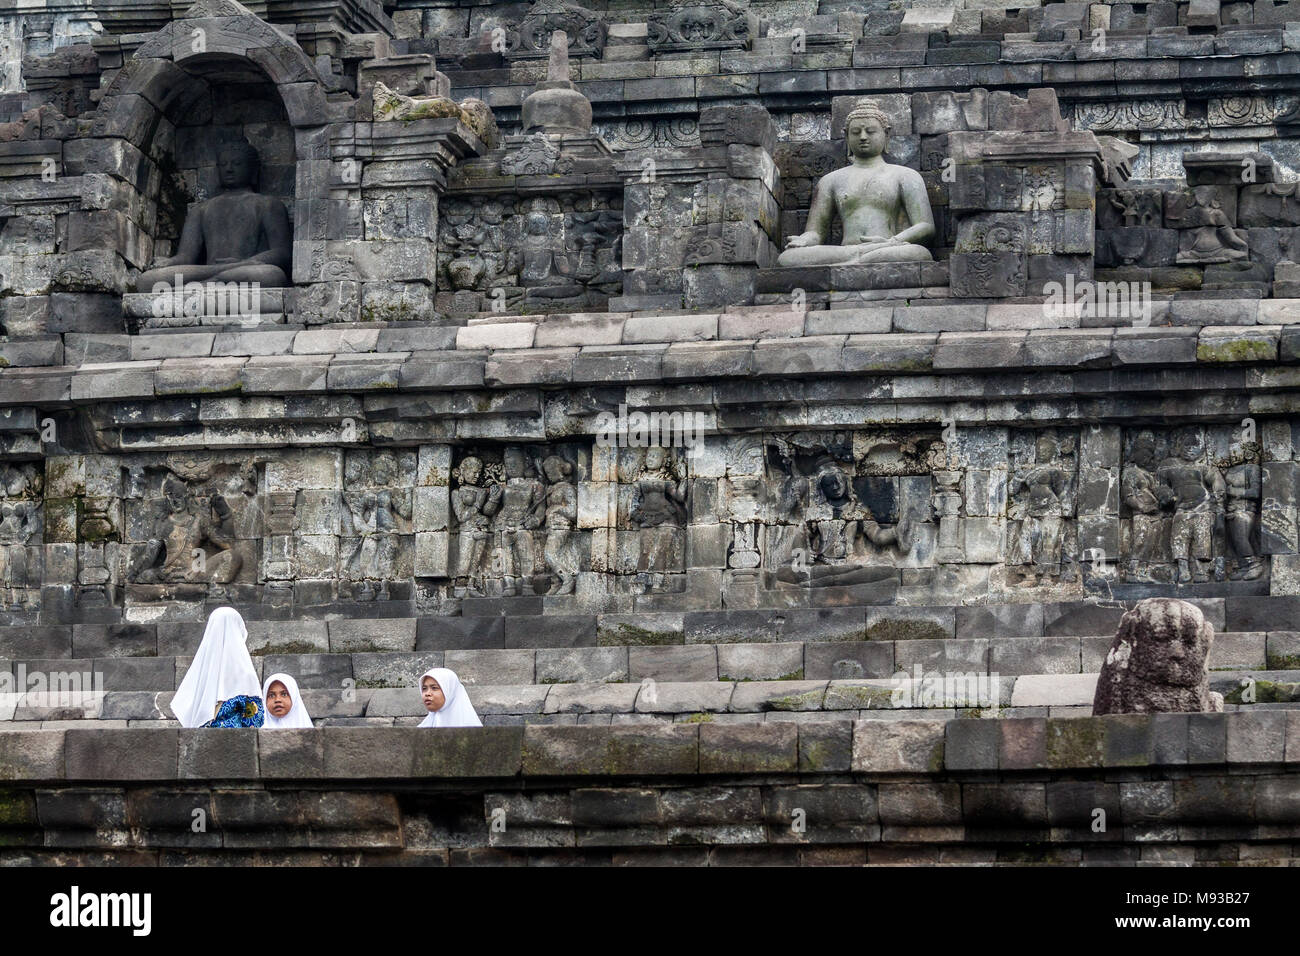 Temple bouddhiste de Borobudur et trois jeunes filles musulmanes portant des chapeaux islamique traditionnelle connue sous le nom d'un hijab éclipsé par le site du patrimoine mondial de l'UNESCO Banque D'Images